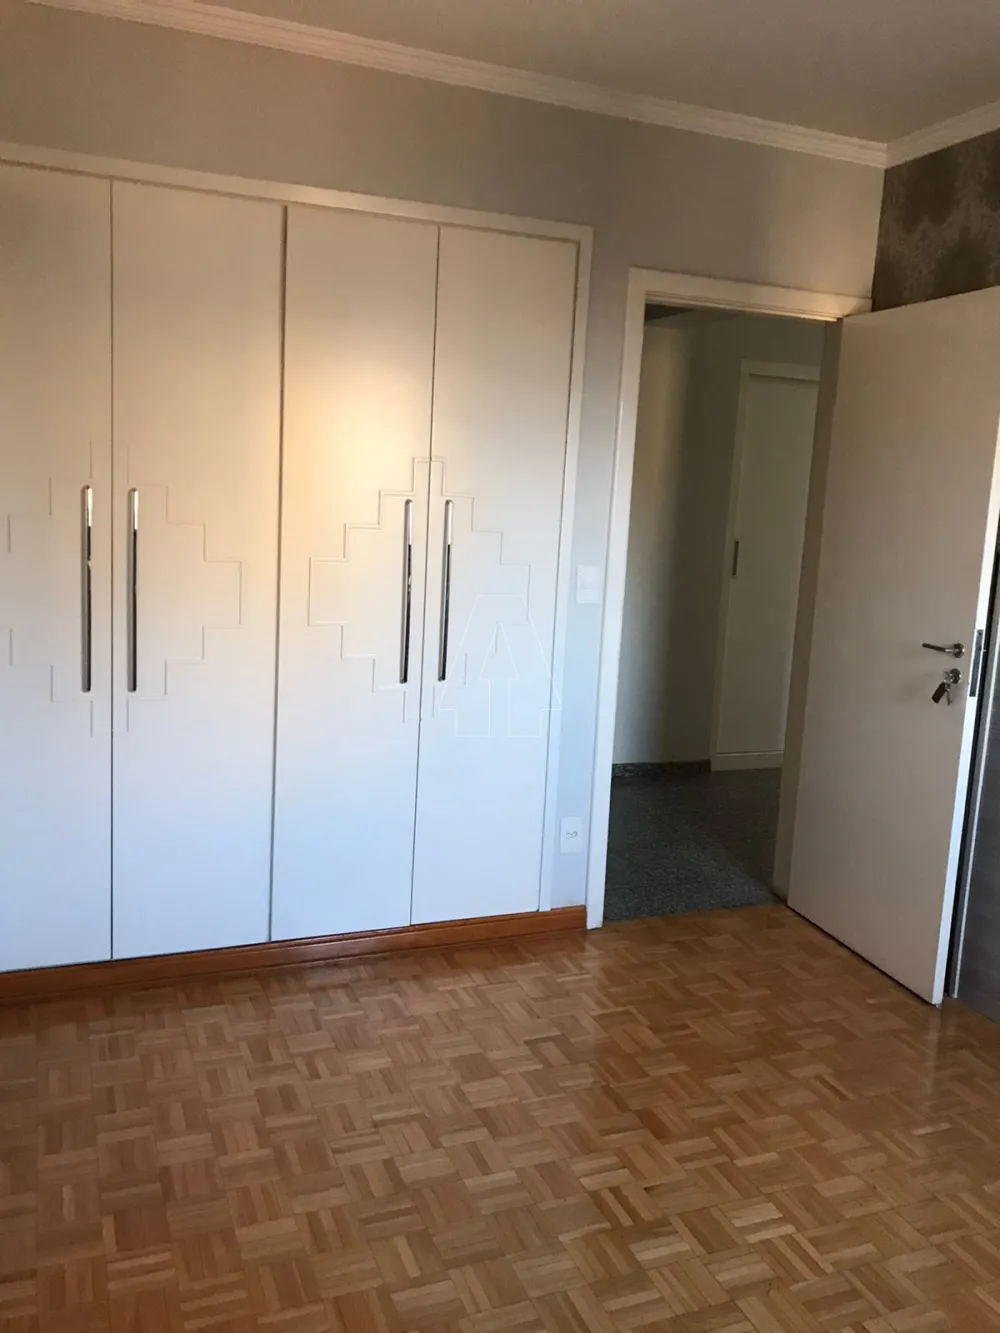 Comprar Apartamento / Padrão em Araçatuba R$ 850.000,00 - Foto 18